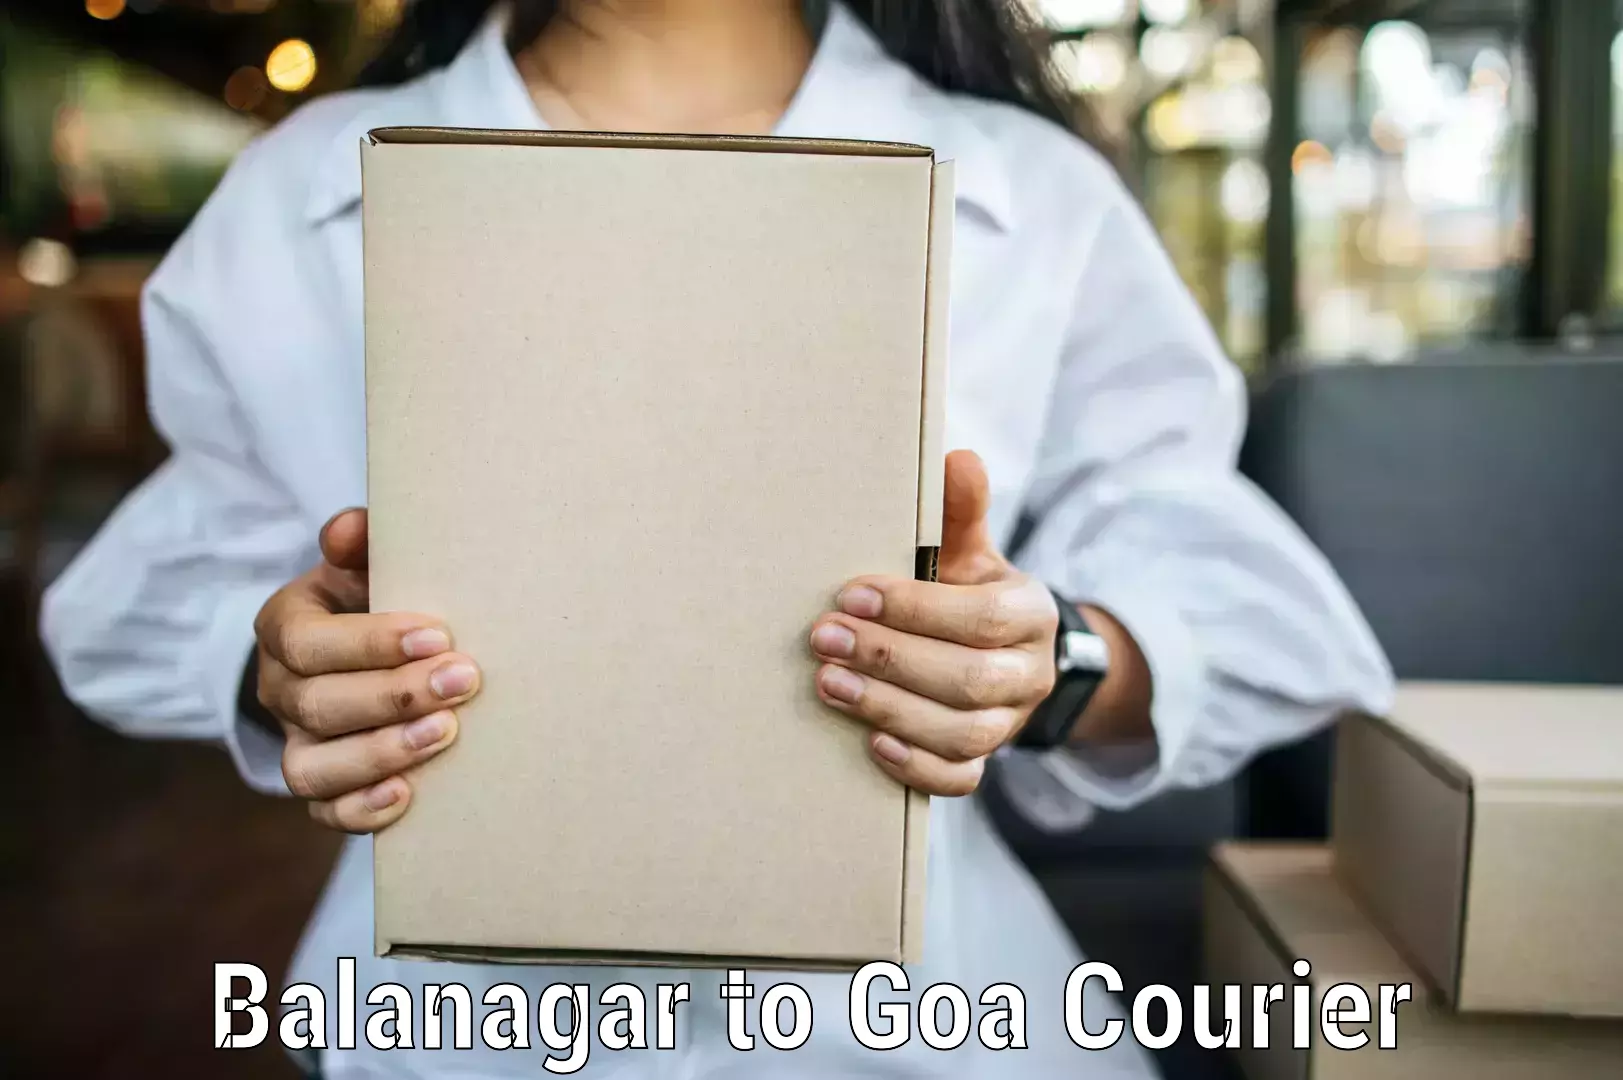 Next-generation courier services Balanagar to Vasco da Gama